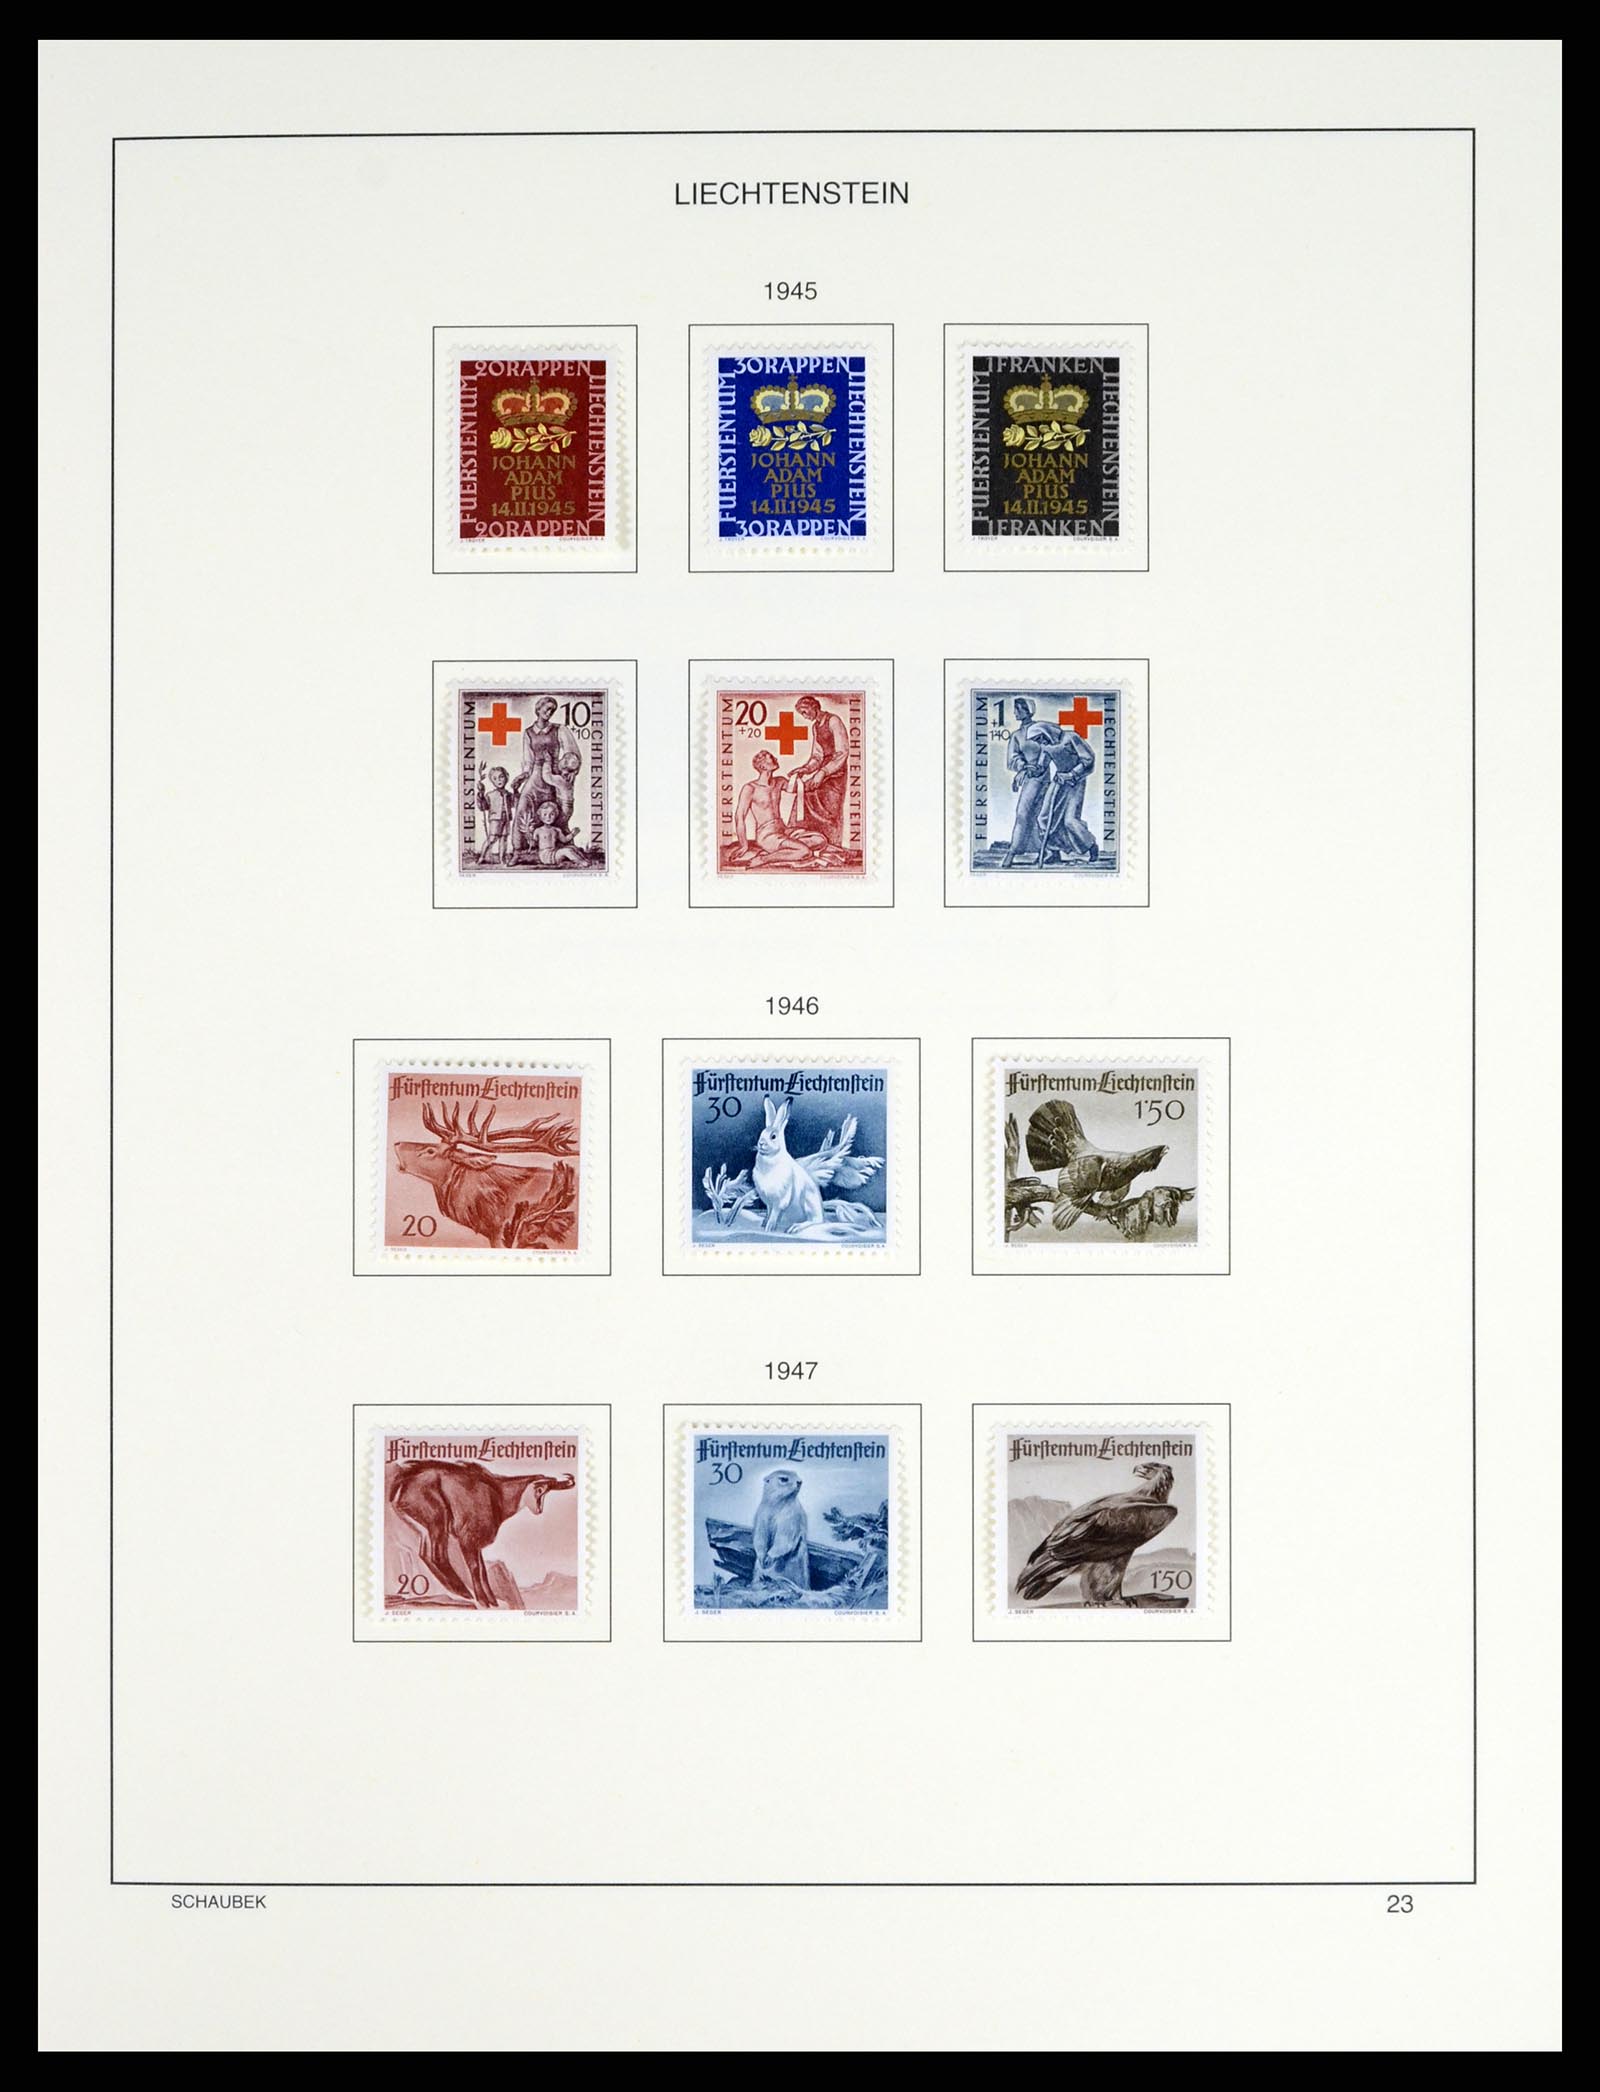 37547 026 - Stamp collection 37547 Liechtenstein 1912-2011.